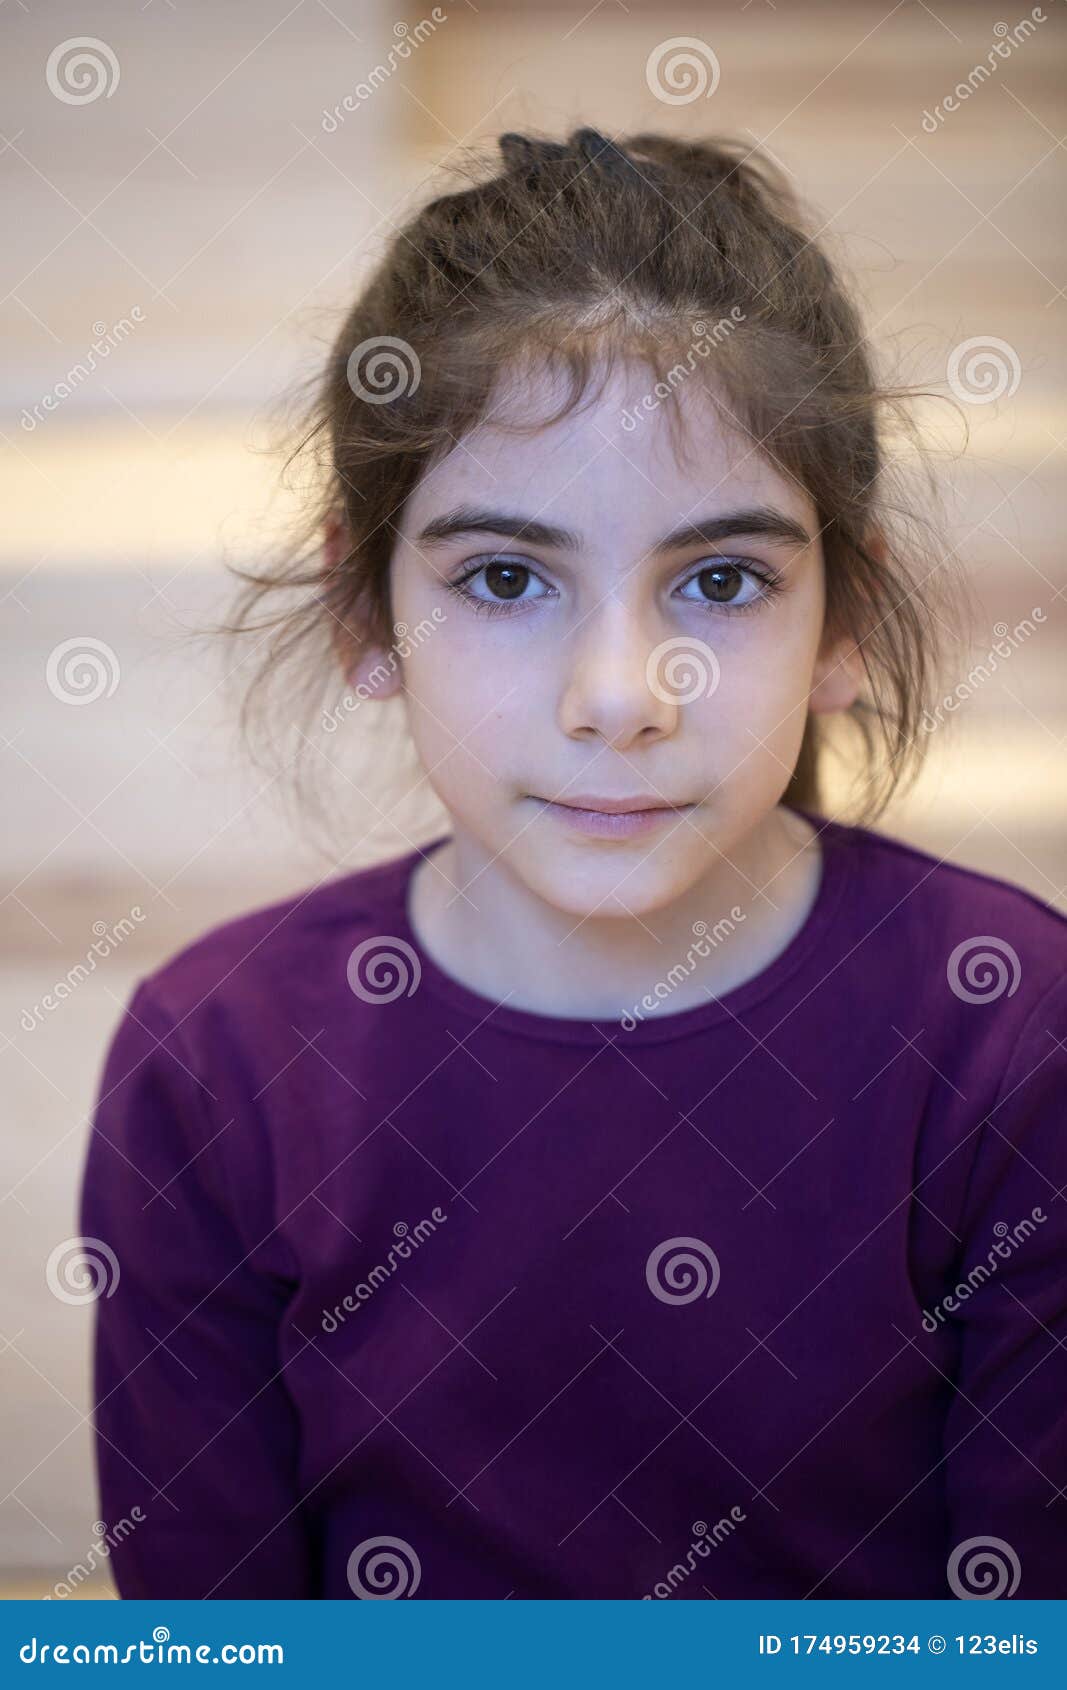 turkish girl portrait